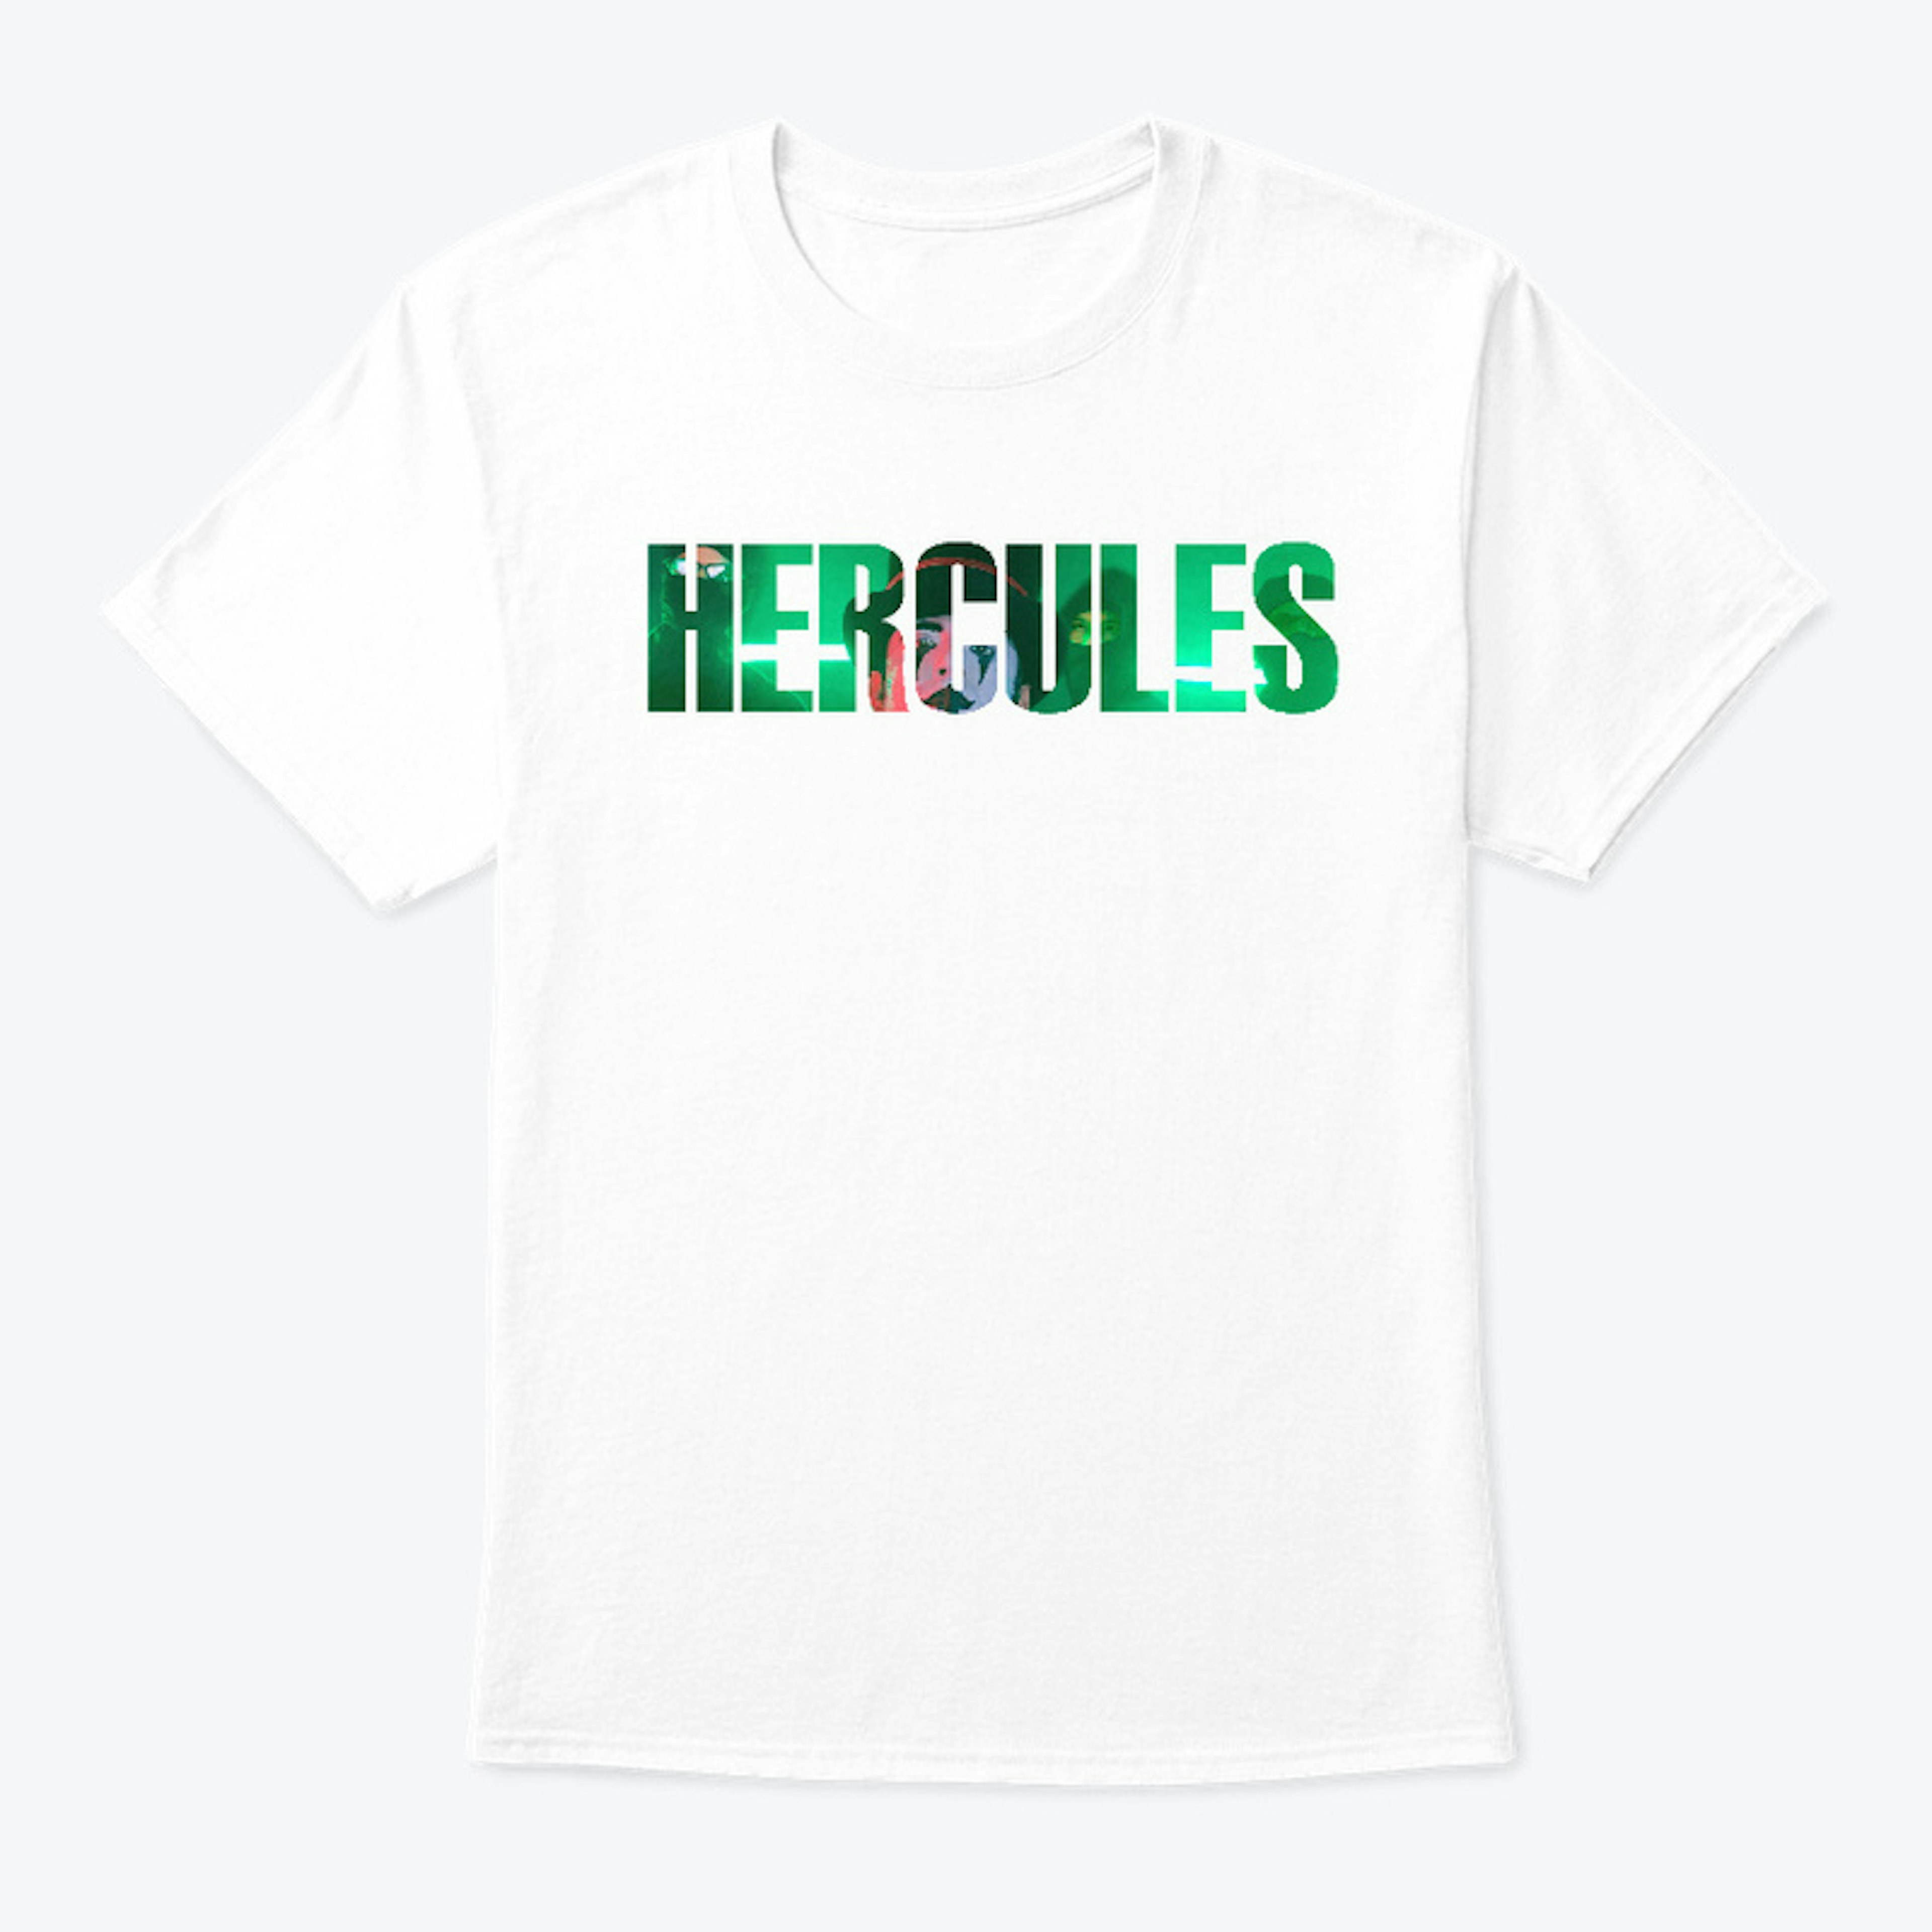 HERCULES - WHITE